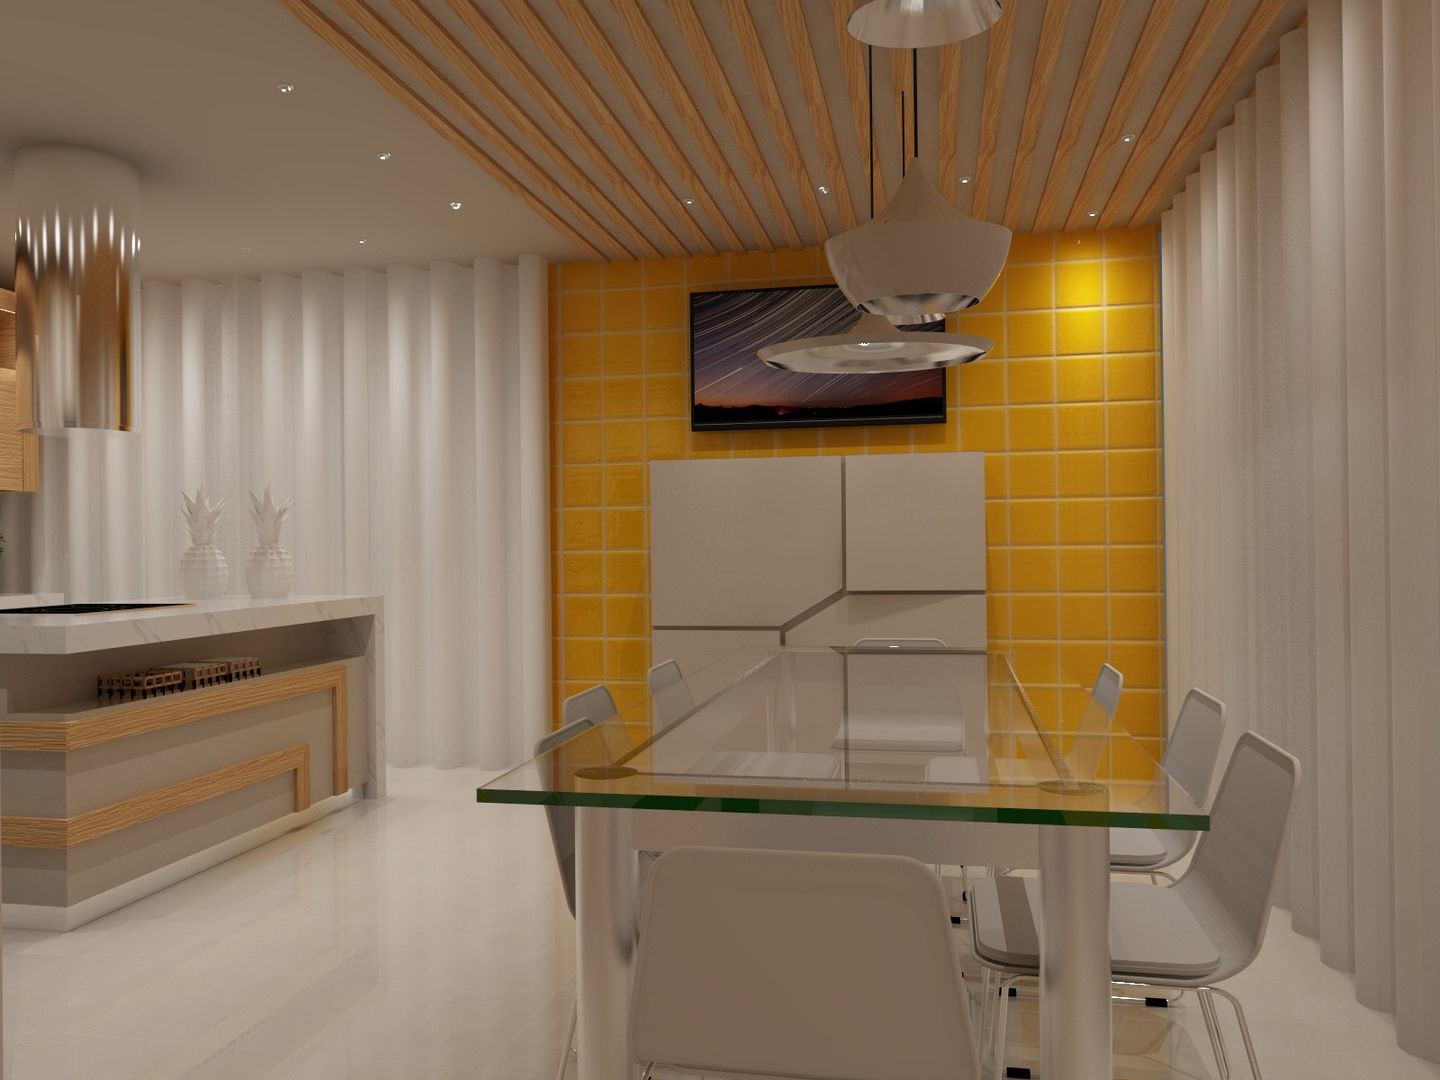 Projecto Cozinha - Vila Verde, Braga, Angelourenzzo - Interior Design Angelourenzzo - Interior Design Armários de cozinha